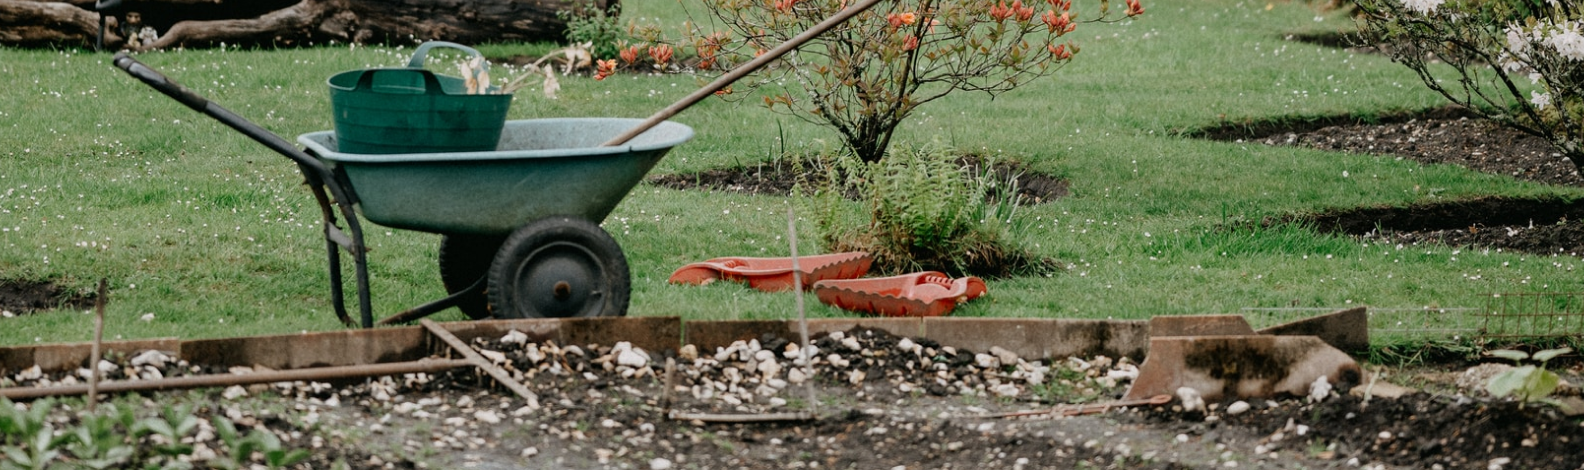 Wheelbarrow with gardening supplies in garden patch